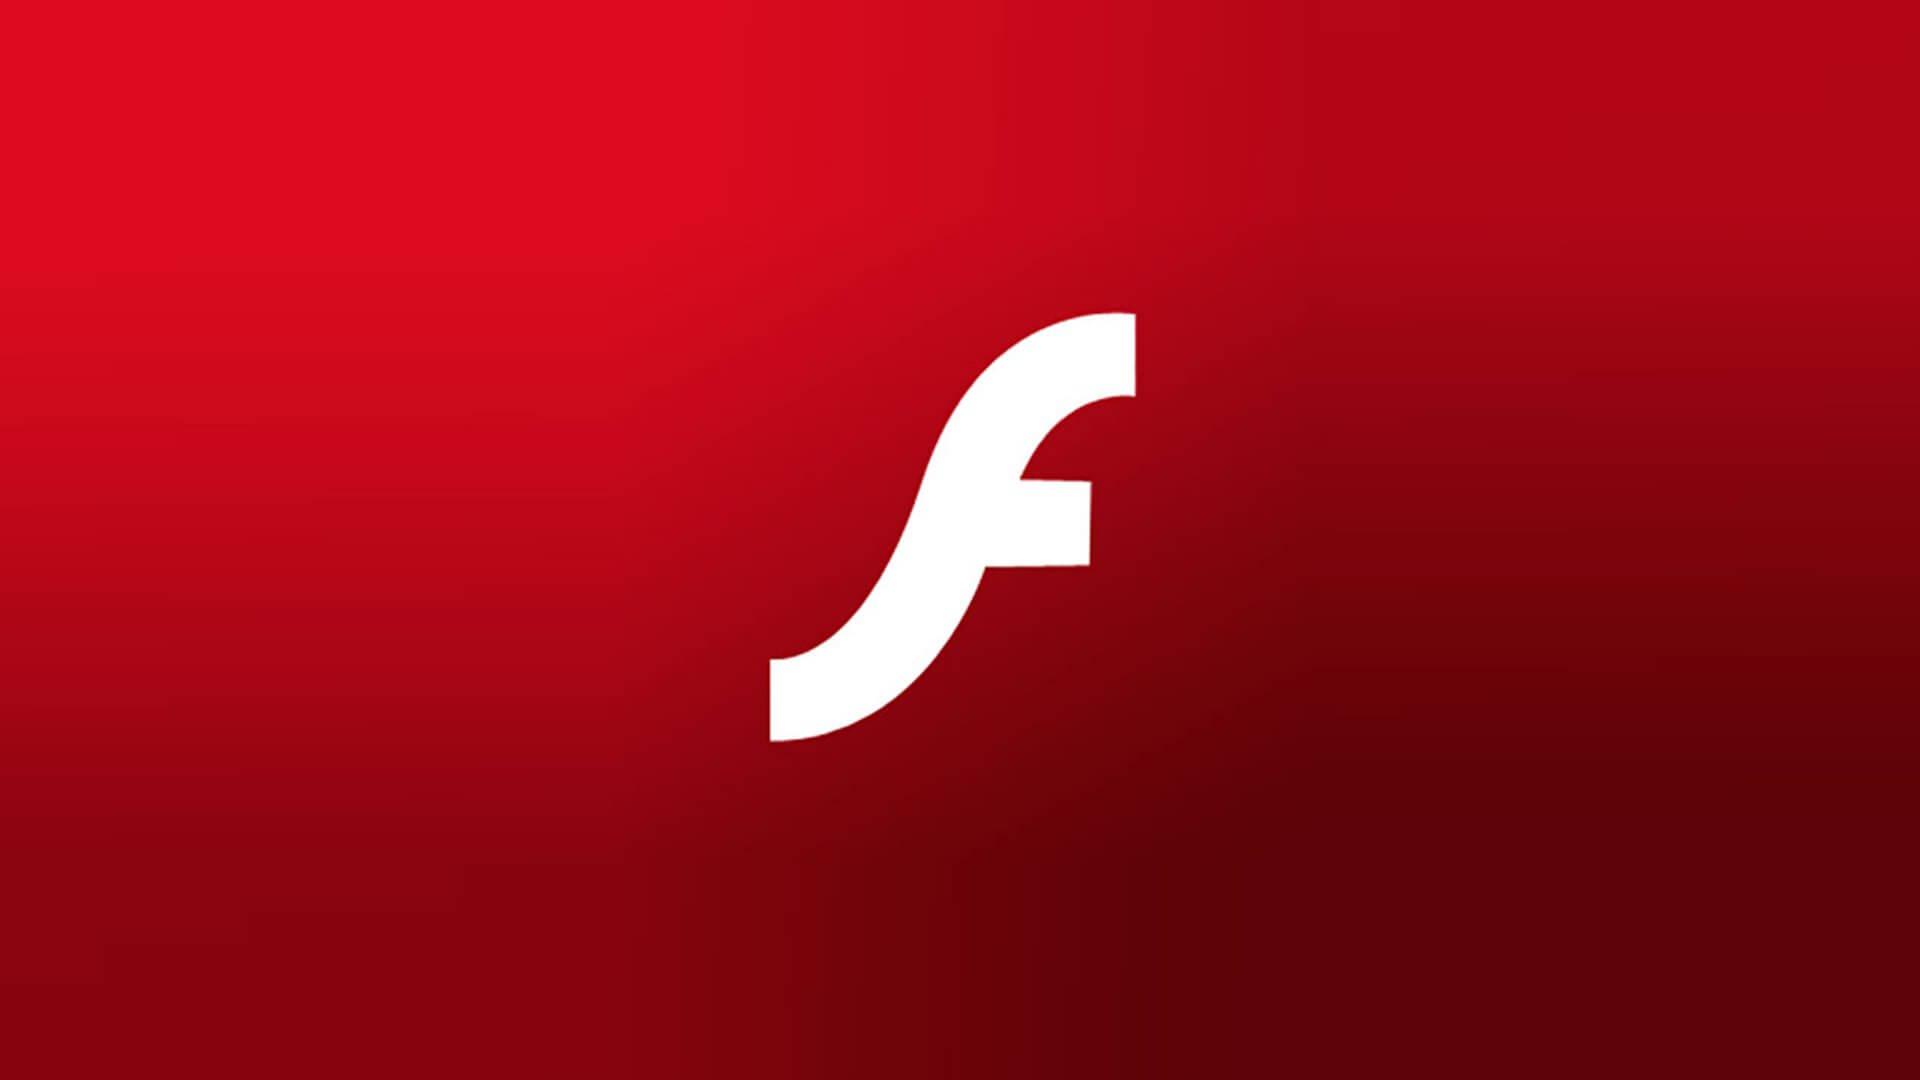 Adobe Flash Logo - Adobe Flash to End in 2020 | Wolf